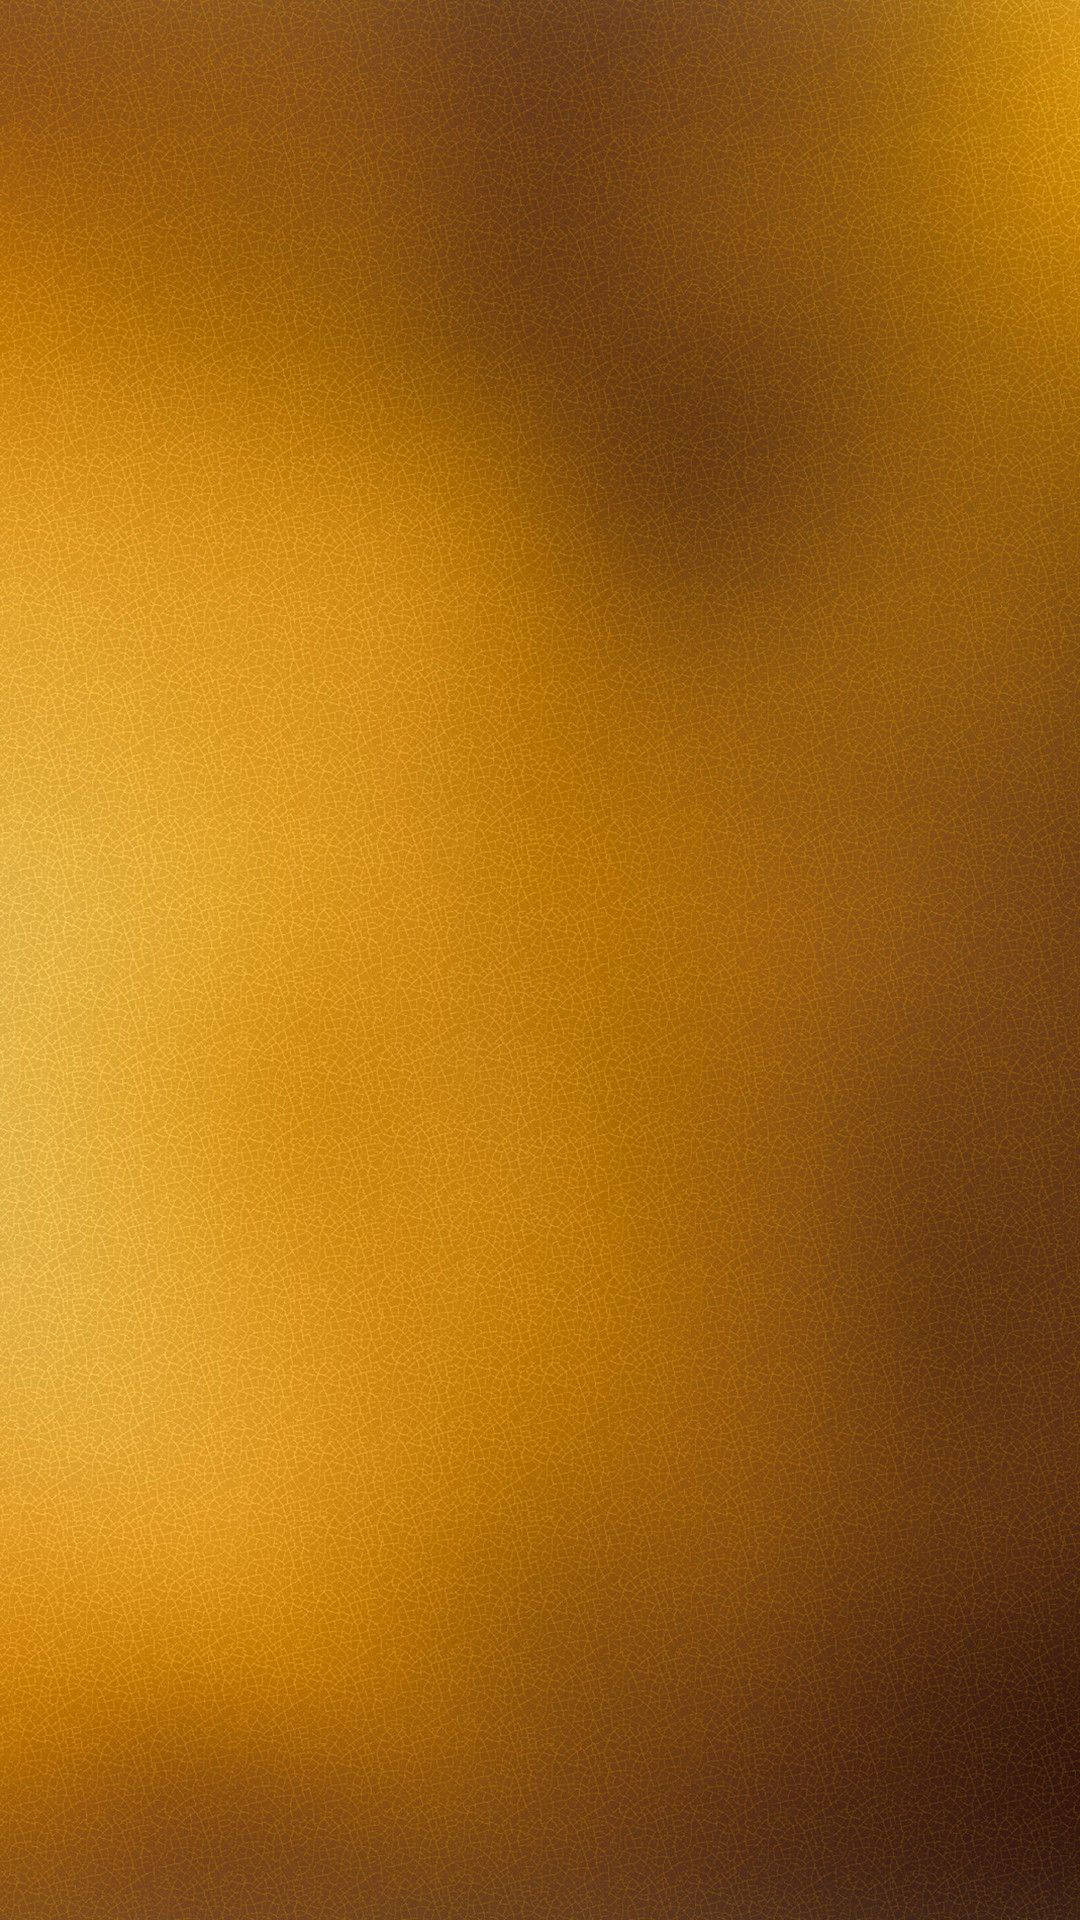 Verbrannteseinfarbiges Goldhintergrundbild. Wallpaper